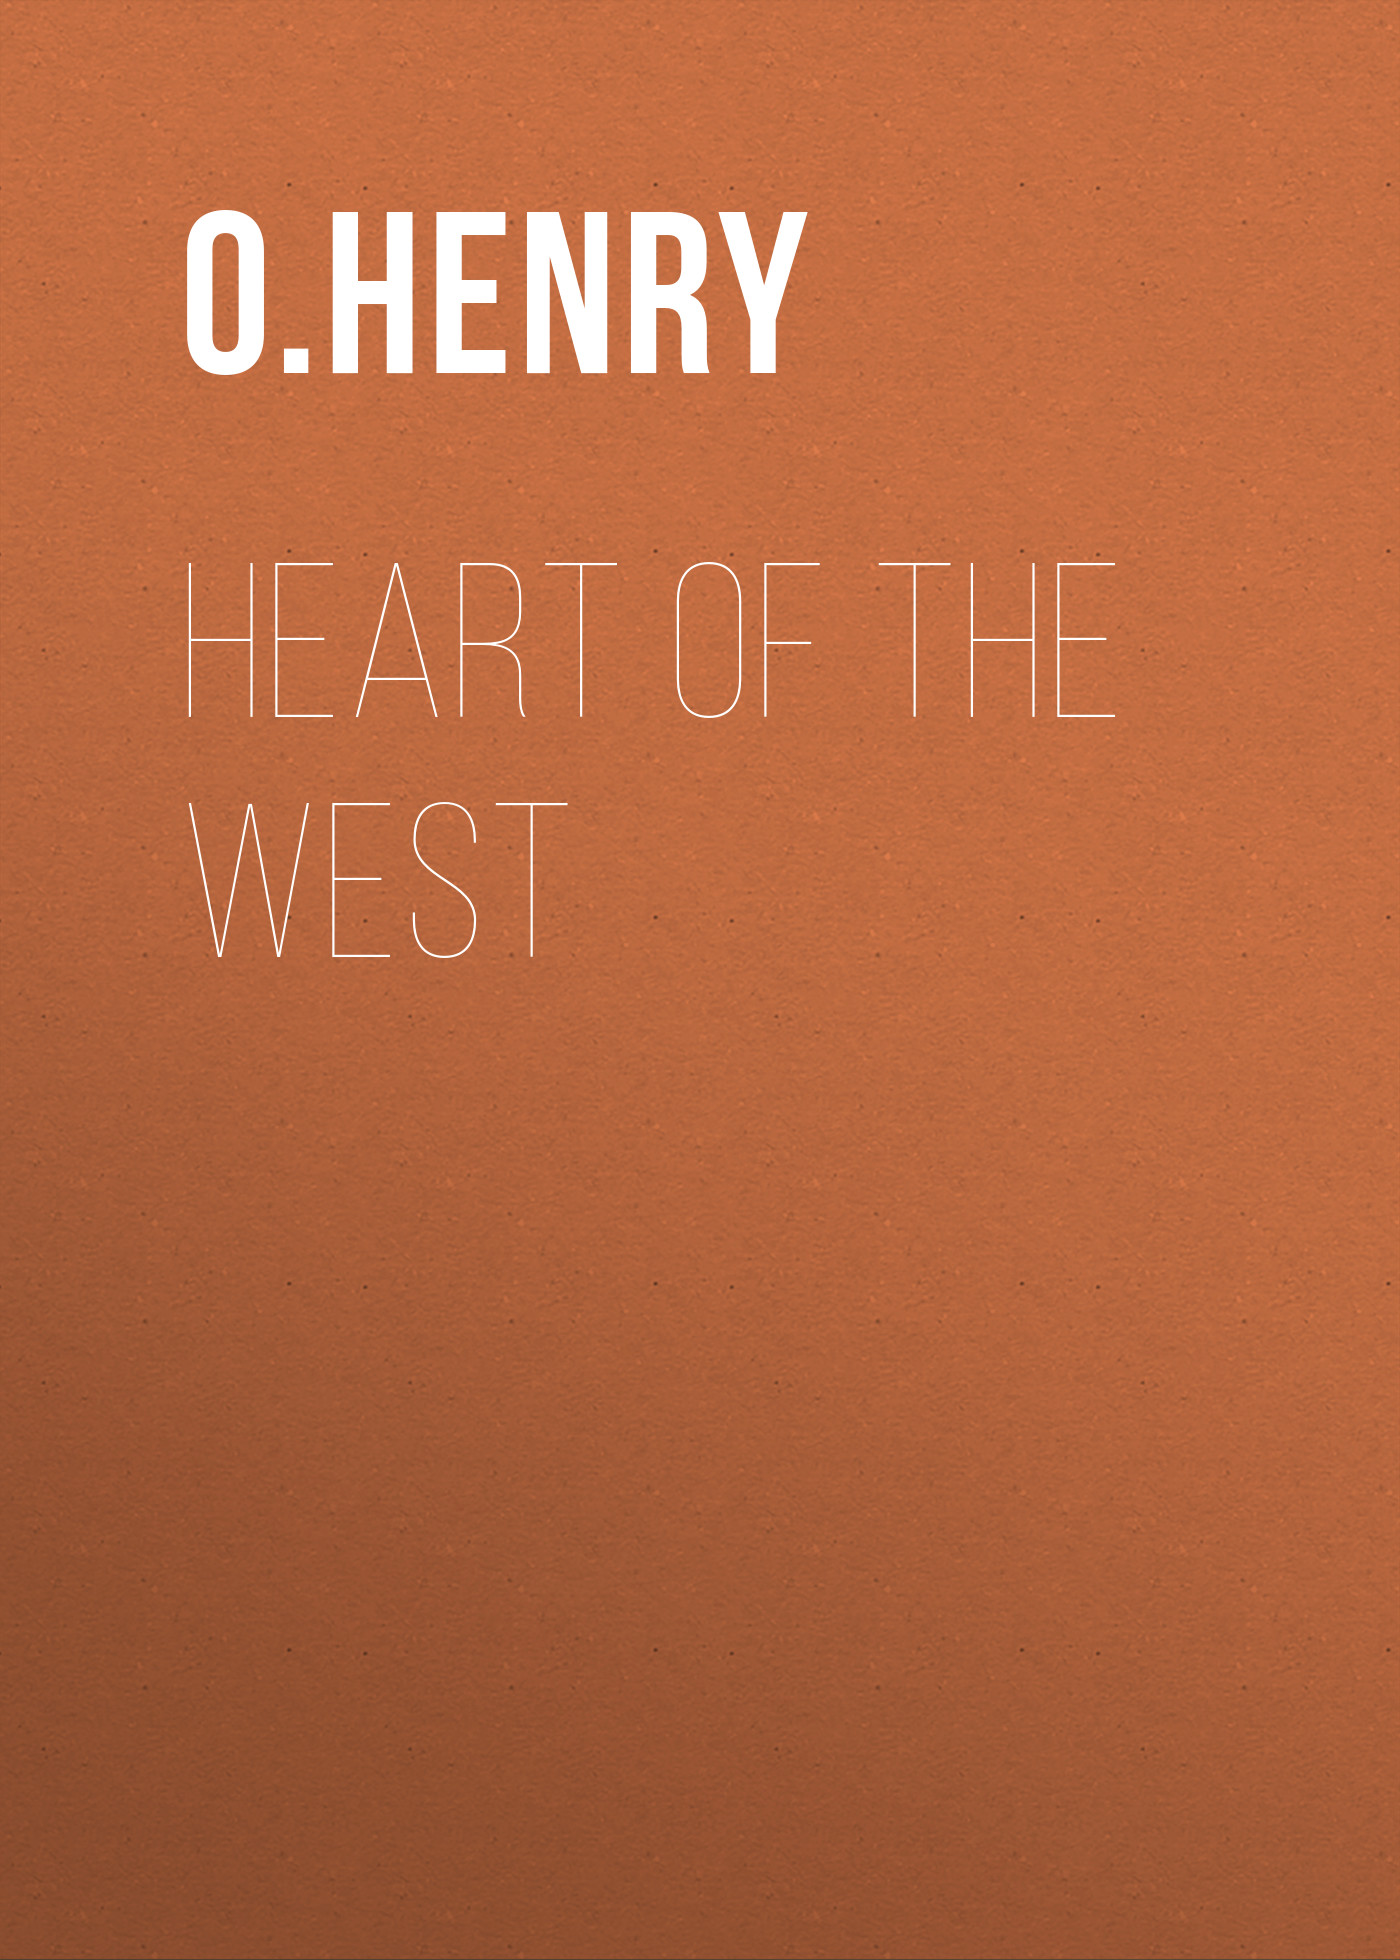 Книга Heart of the West из серии , созданная O. Henry, может относится к жанру Литература 20 века, Зарубежная классика. Стоимость электронной книги Heart of the West с идентификатором 25559732 составляет 0 руб.